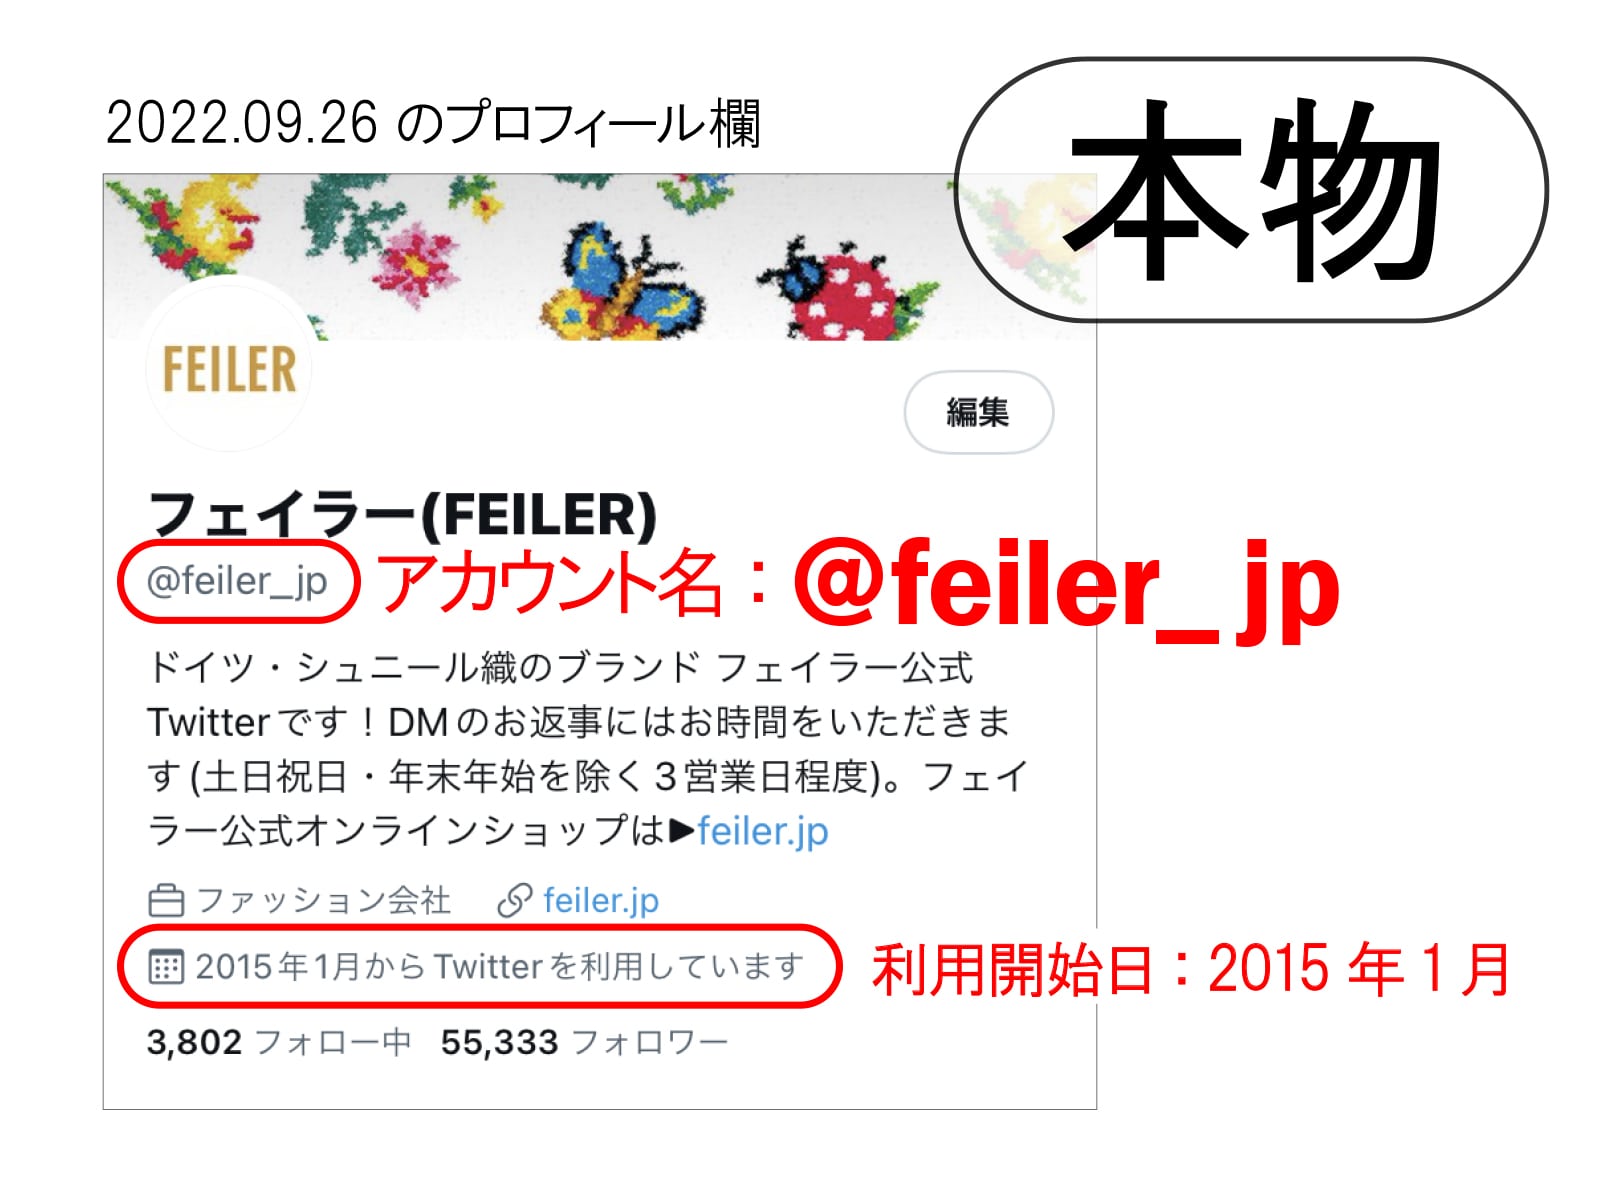 Feiler Magazine 詳細 フェイラー Feiler オフィシャルブランドサイト